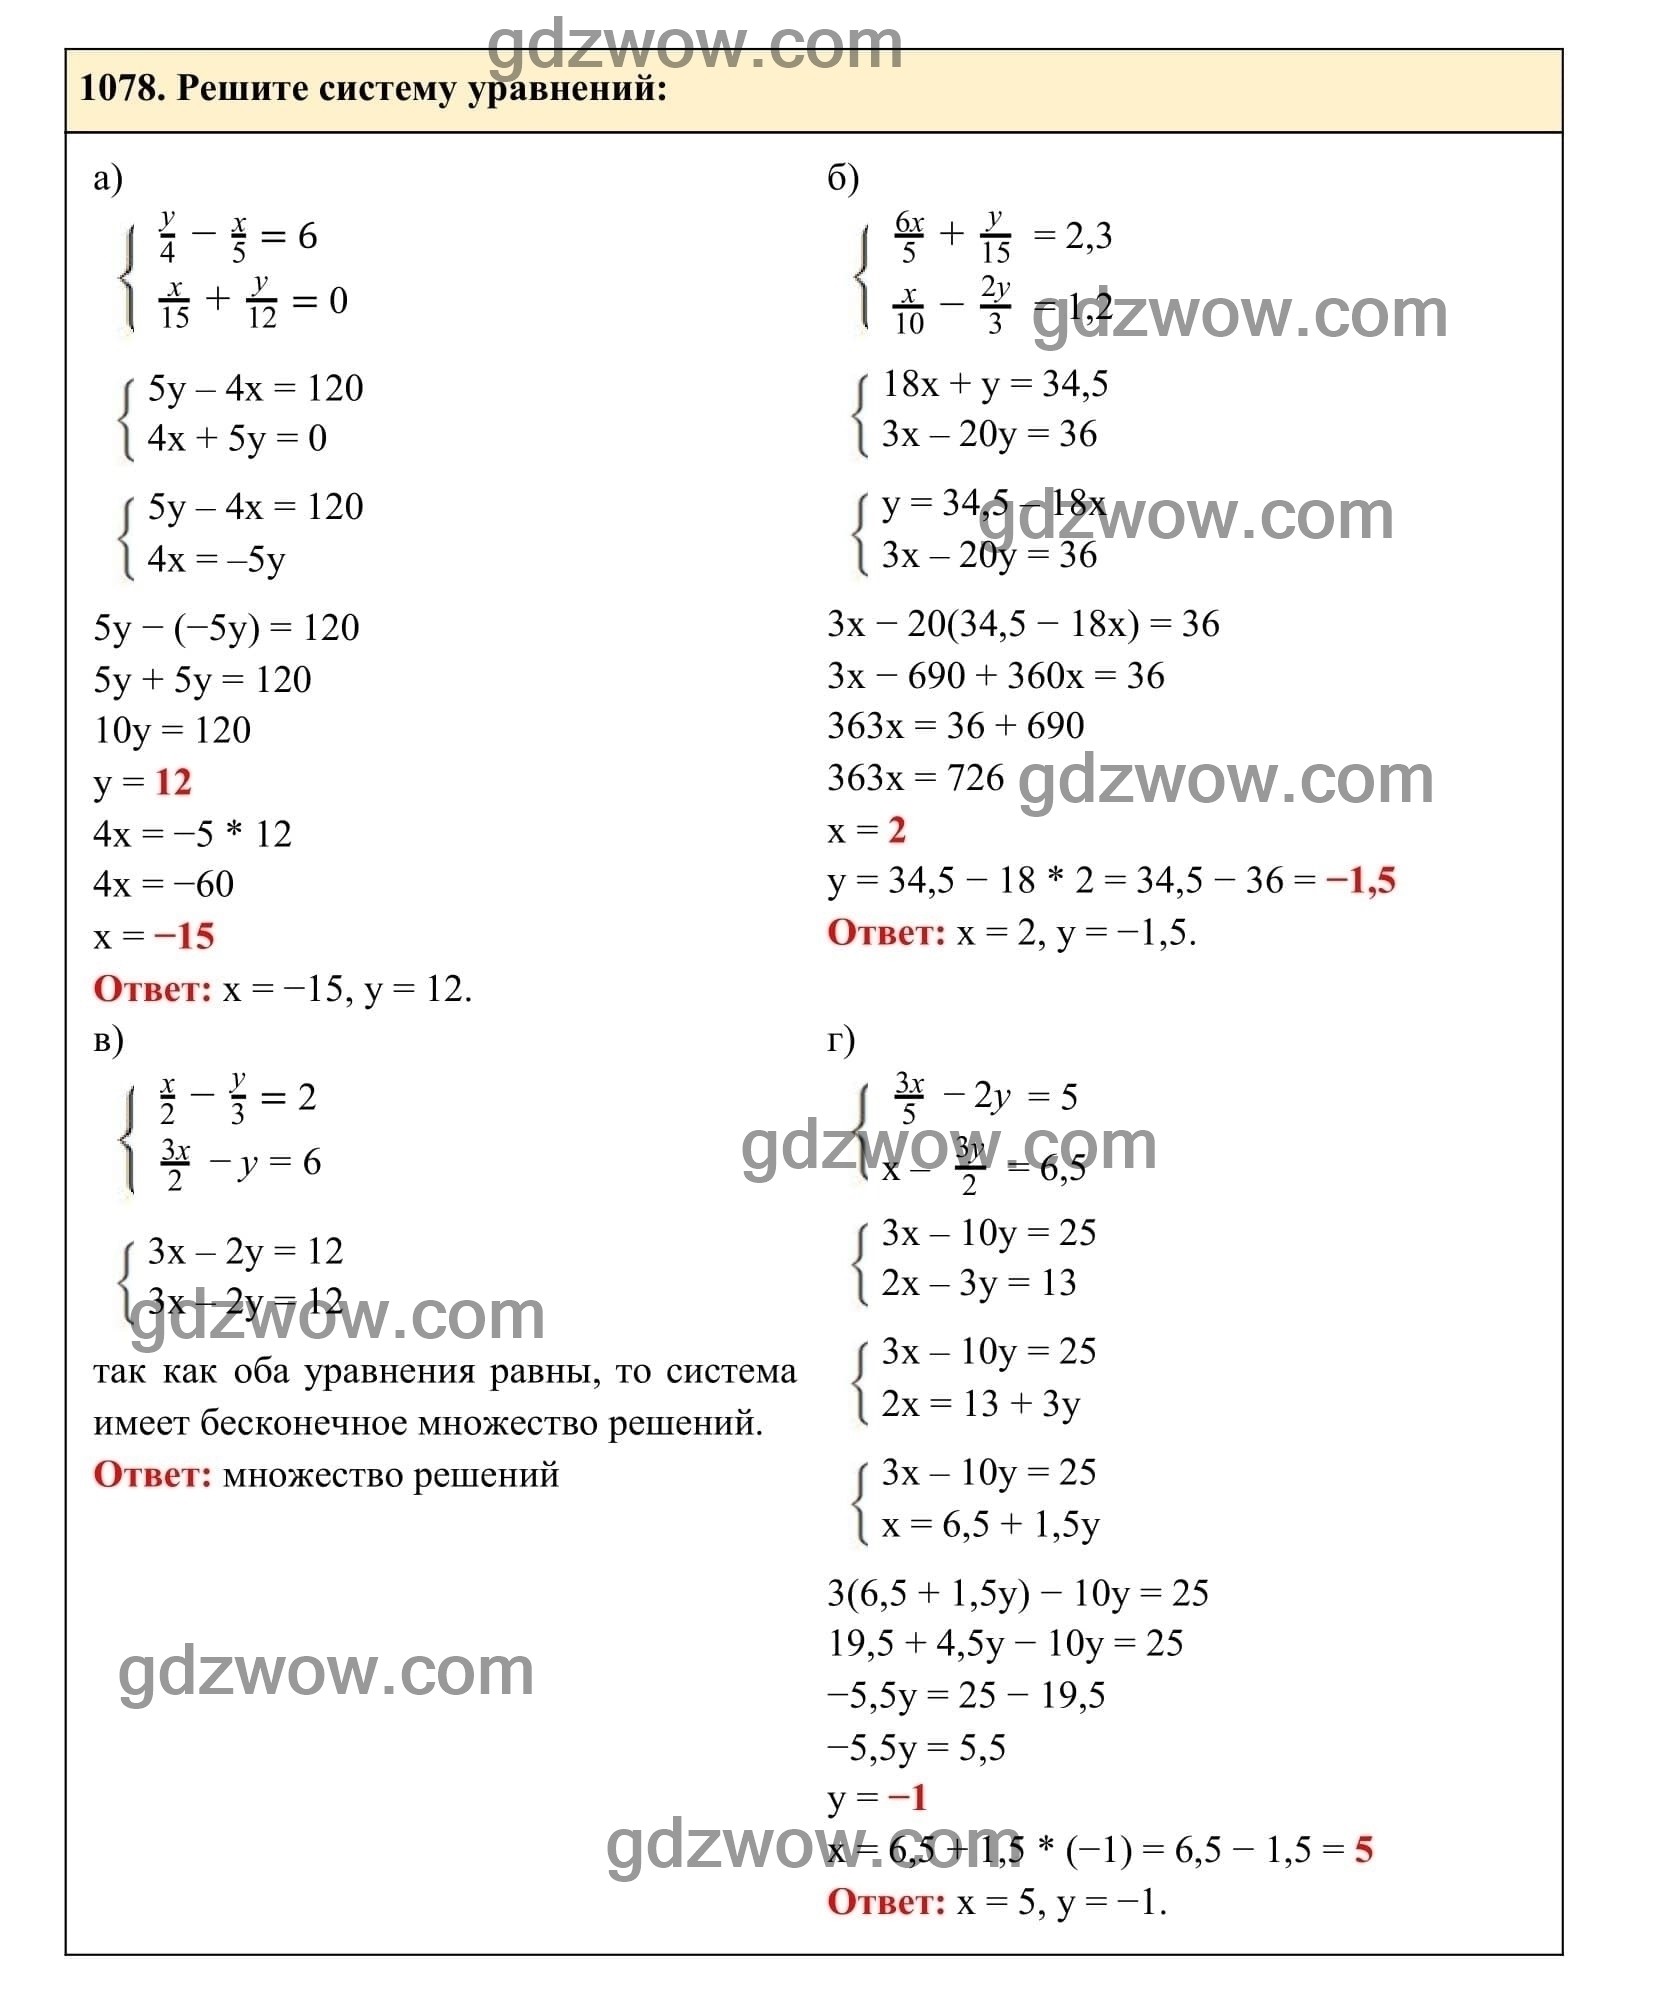 Упражнение 1078 - ГДЗ по Алгебре 7 класс Учебник Макарычев (решебник) - GDZwow